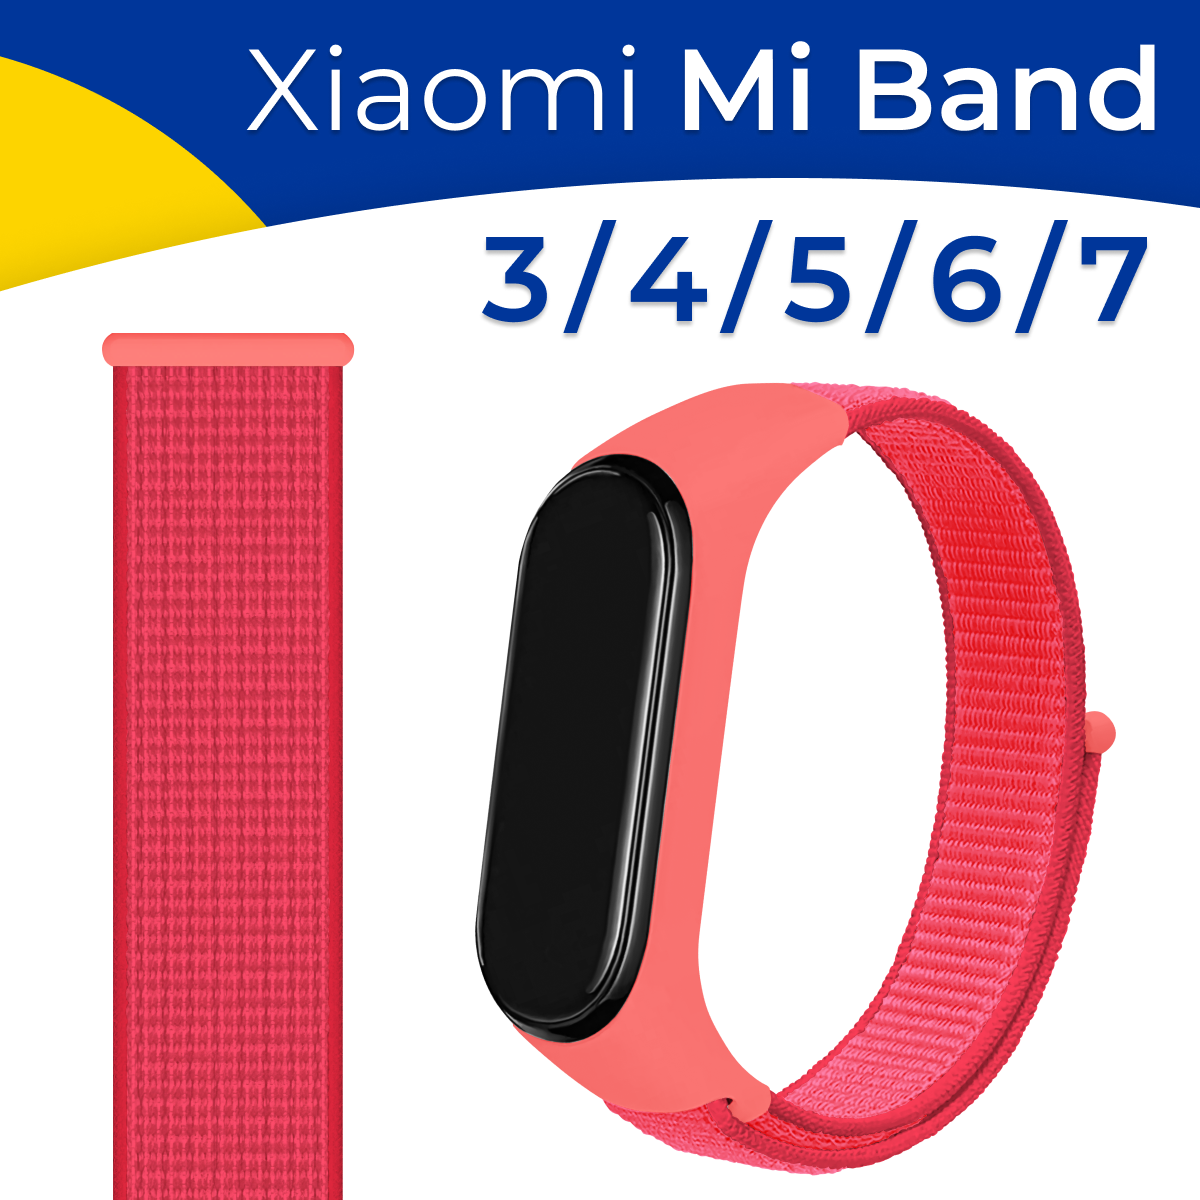 Нейлоновый ремешок для Xiaomi Mi Band 3, Mi Band 4, Mi Band 5, Mi Band 6 и Mi Band 7 / Розовый браслет для смарт часов Сяоми Ми Бэнд 3, 4, 5, 6 и 7